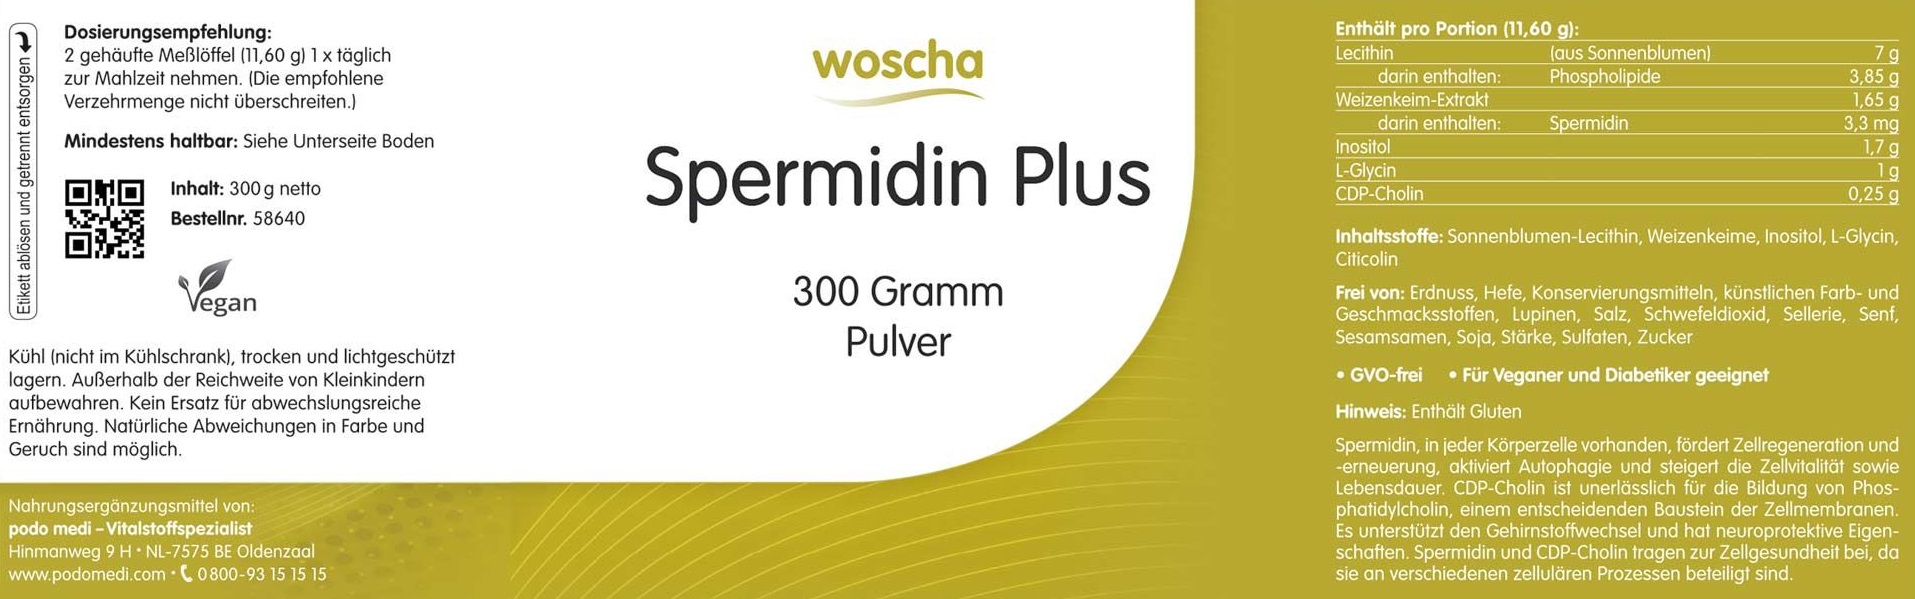 Woscha Spermidin Plus von podo medi beinhaltet 300 Gramm Etikett